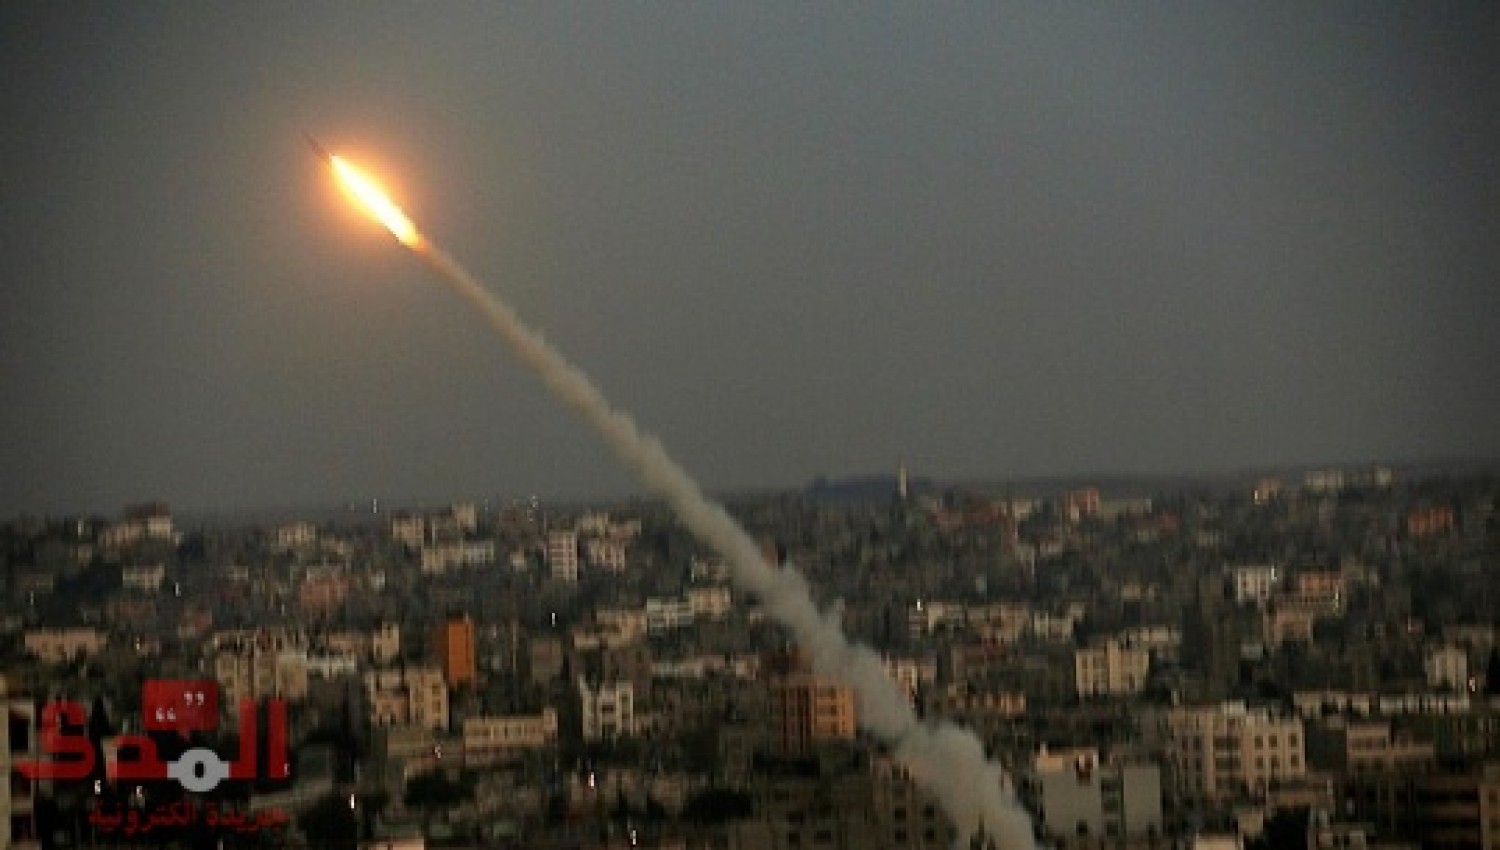   صافرات الإنذار تدوى إثر إطلاق صاروخين من قطاع غزة على الأراضى الإسرائيلية